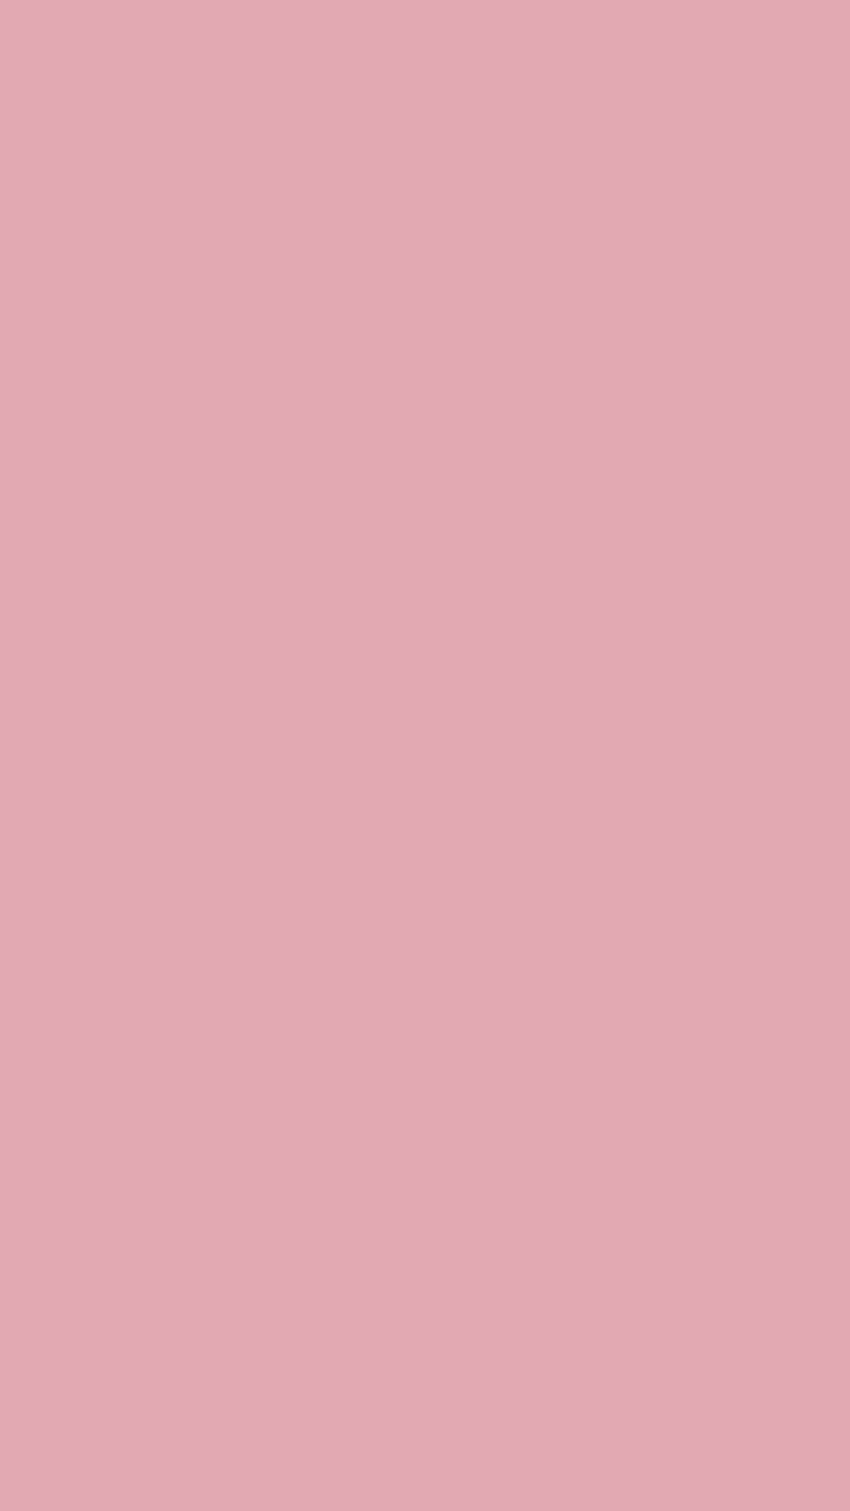 Hình nền trơn màu hồng là lựa chọn lý tưởng cho những người yêu thích sự đơn giản và thanh lịch. Hãy xem ảnh để hiểu rõ hơn về sự tinh tế của gam màu hồng này.